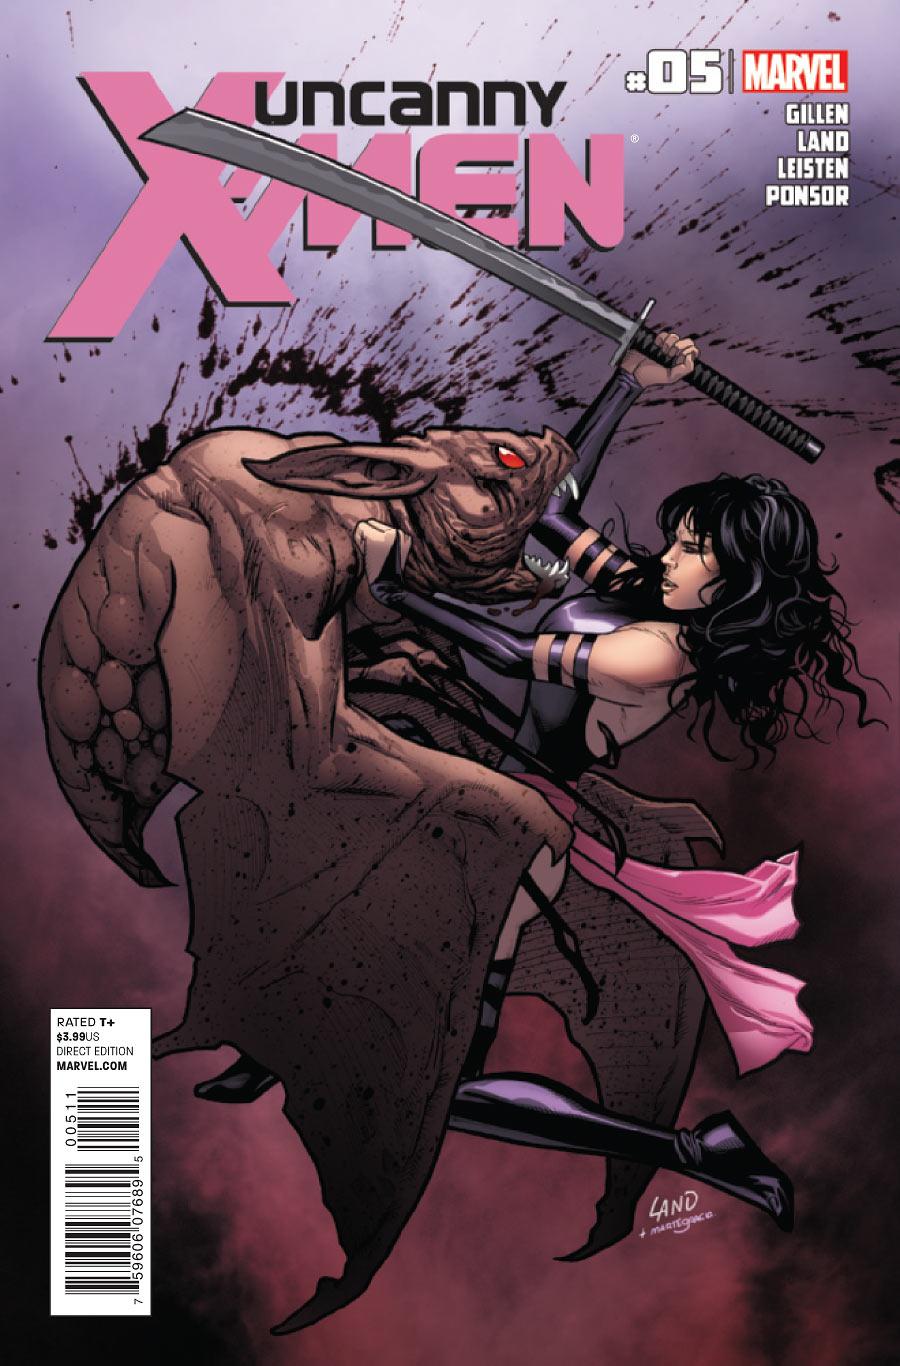 Uncanny X-Men Vol. 2 #5